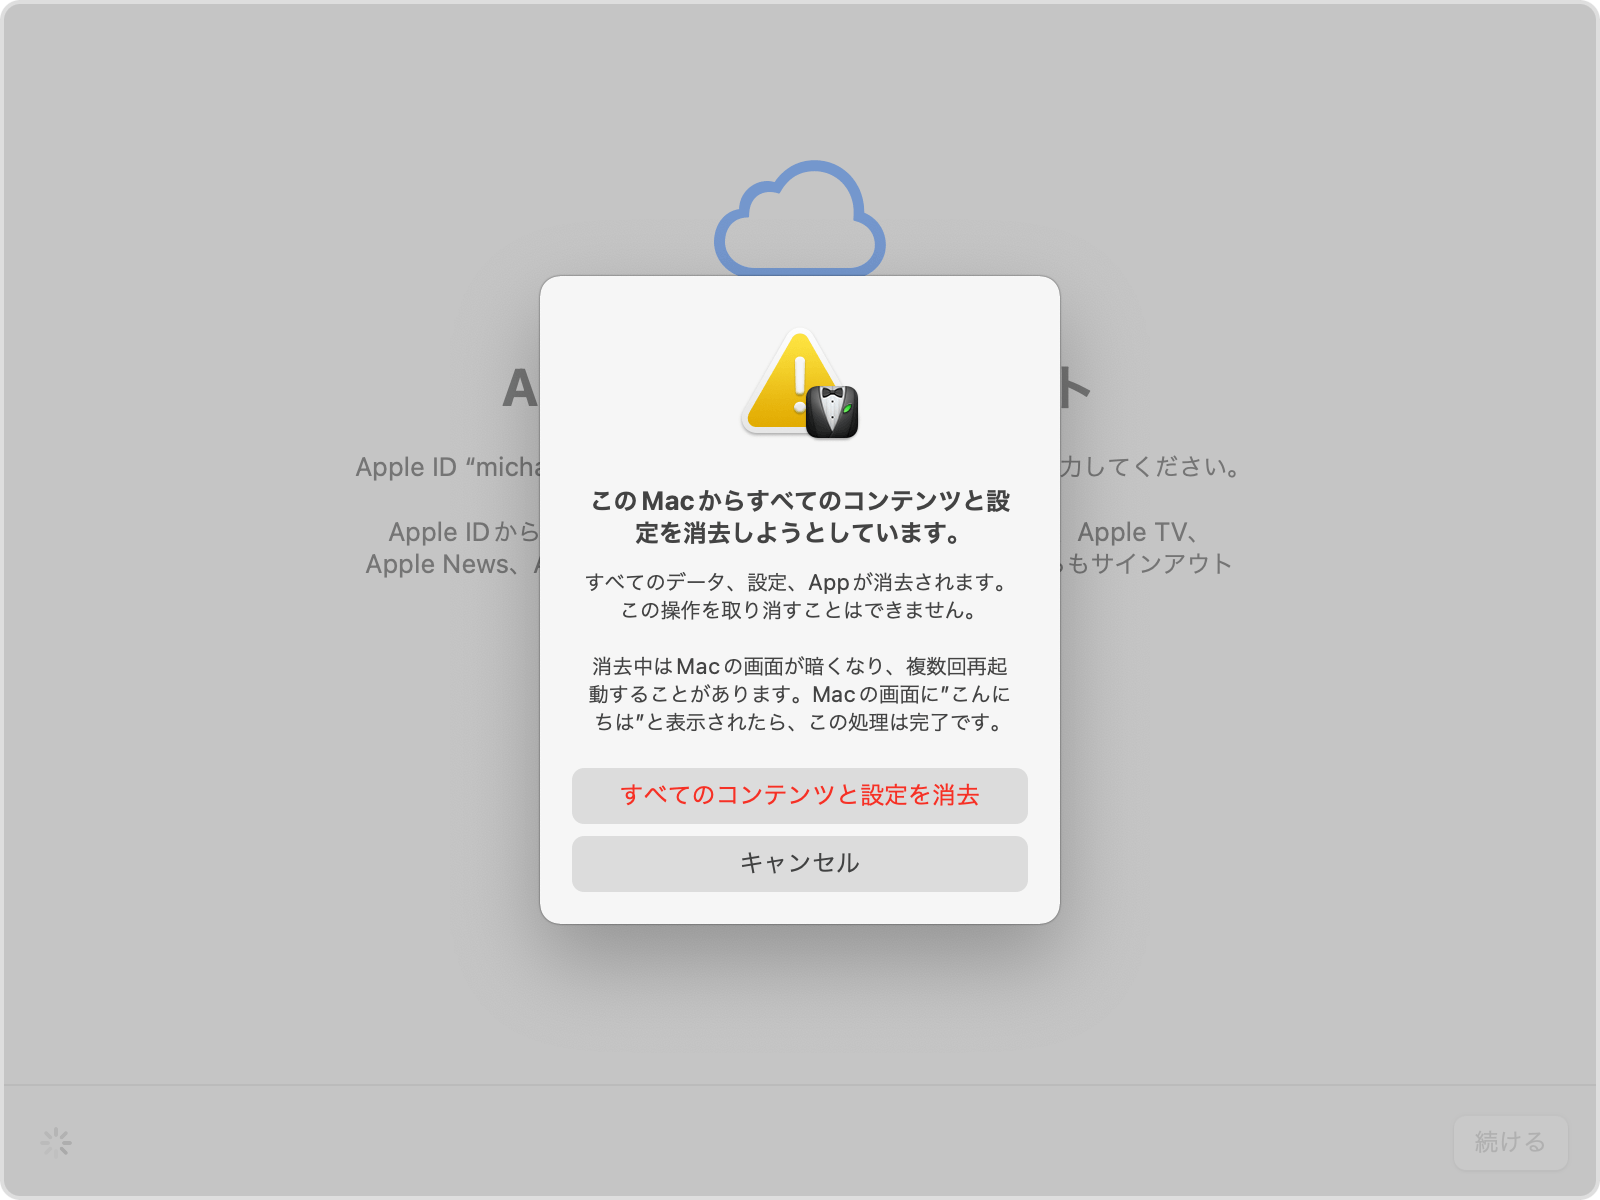 Mac を消去して工場出荷時の設定にリセットする - Apple サポート (日本)